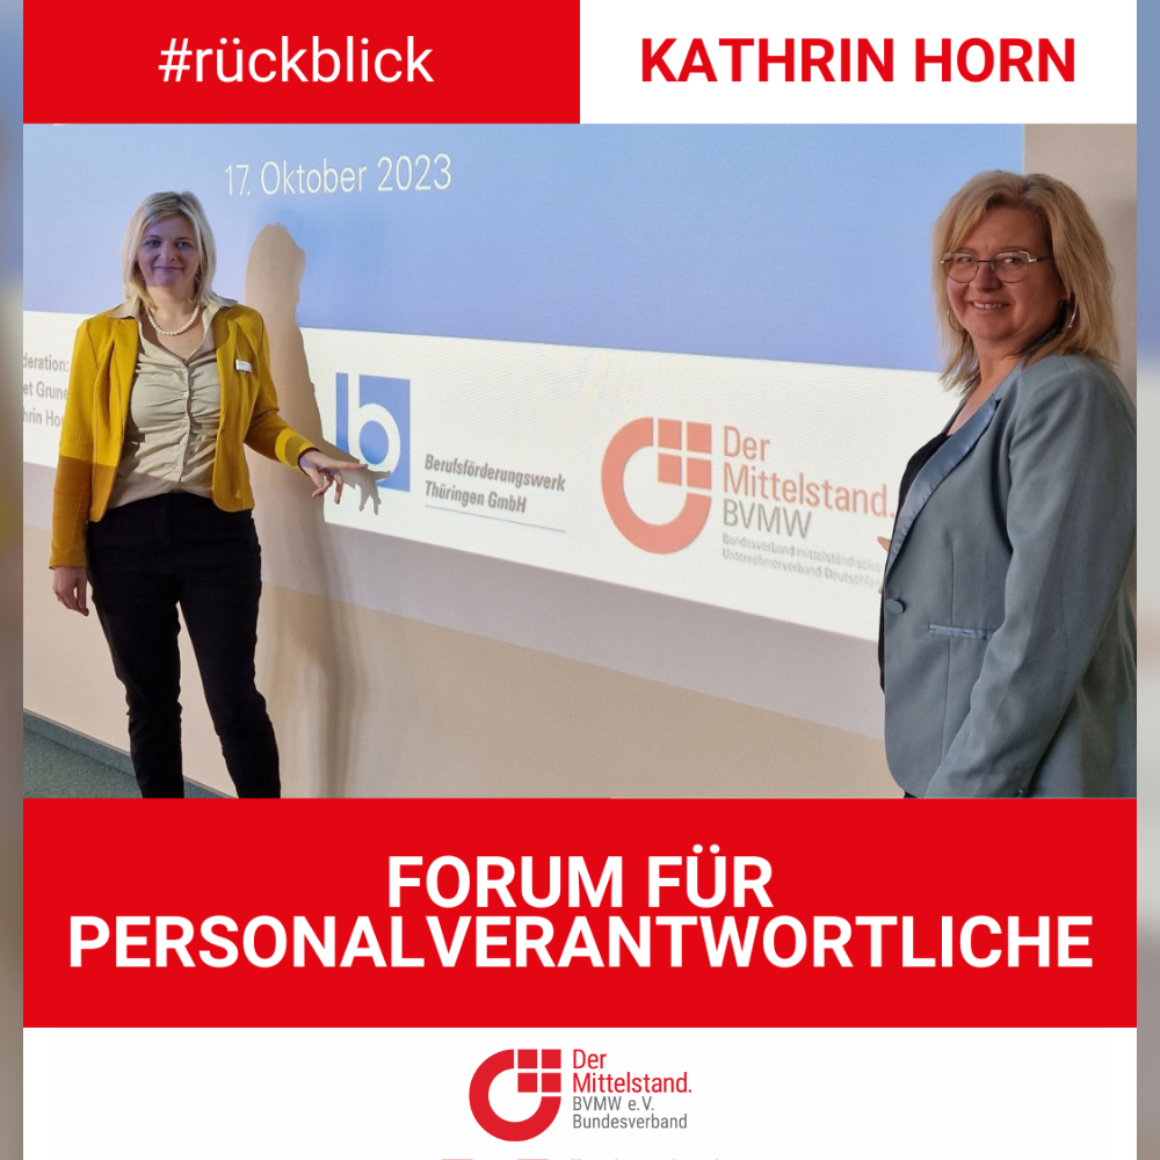 Rückblick Forum für Personalverantwortliche Kathrin Horn